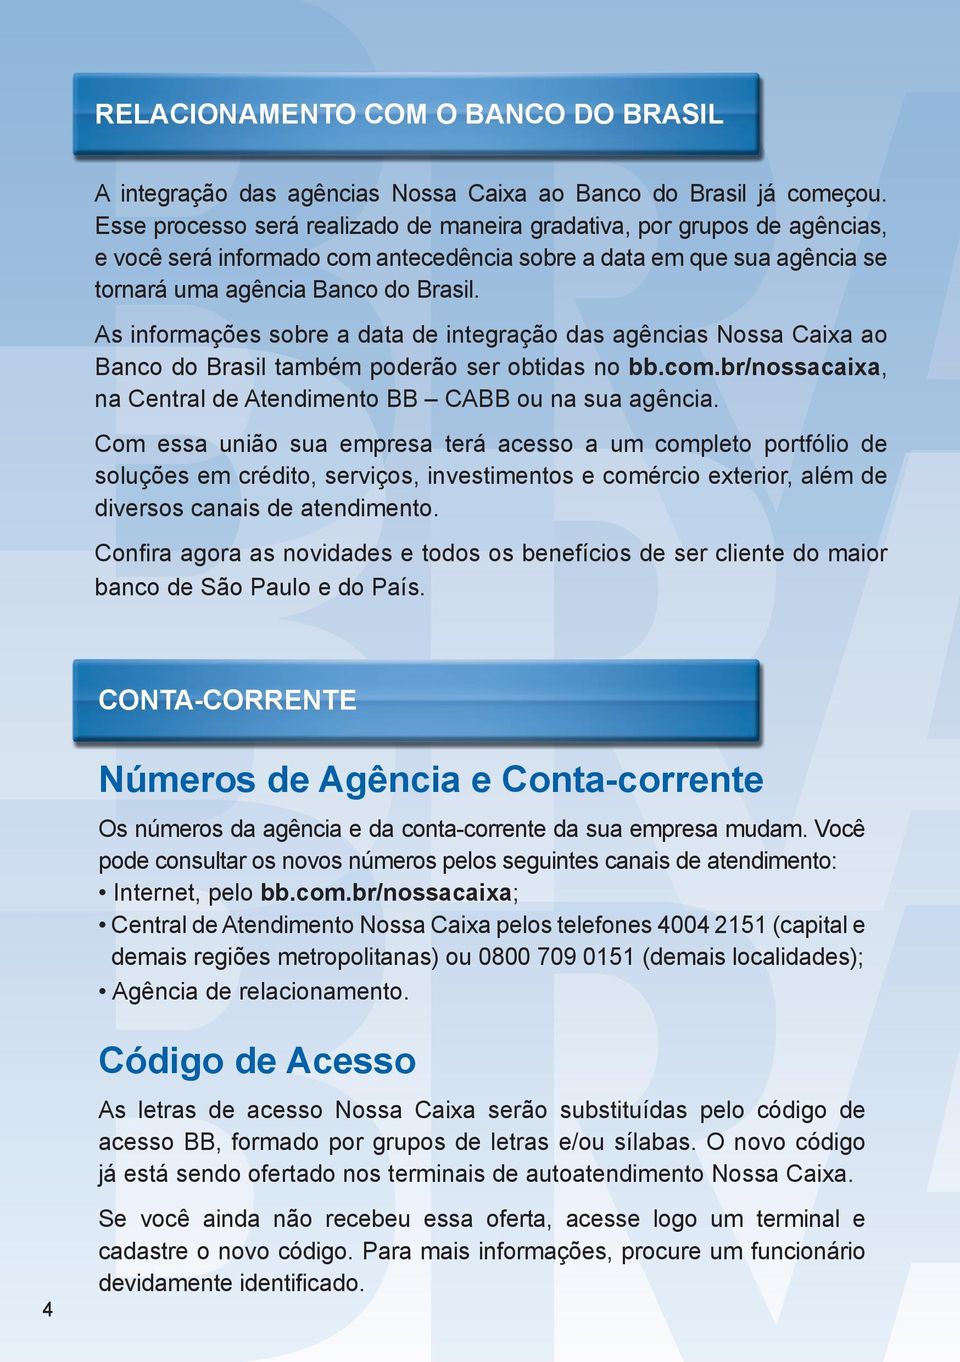 As informações sobre a data de integração das agências Nossa Caixa ao Banco do Brasil também poderão ser obtidas no bb.com.br/nossacaixa, na Central de Atendimento BB CABB ou na sua agência.